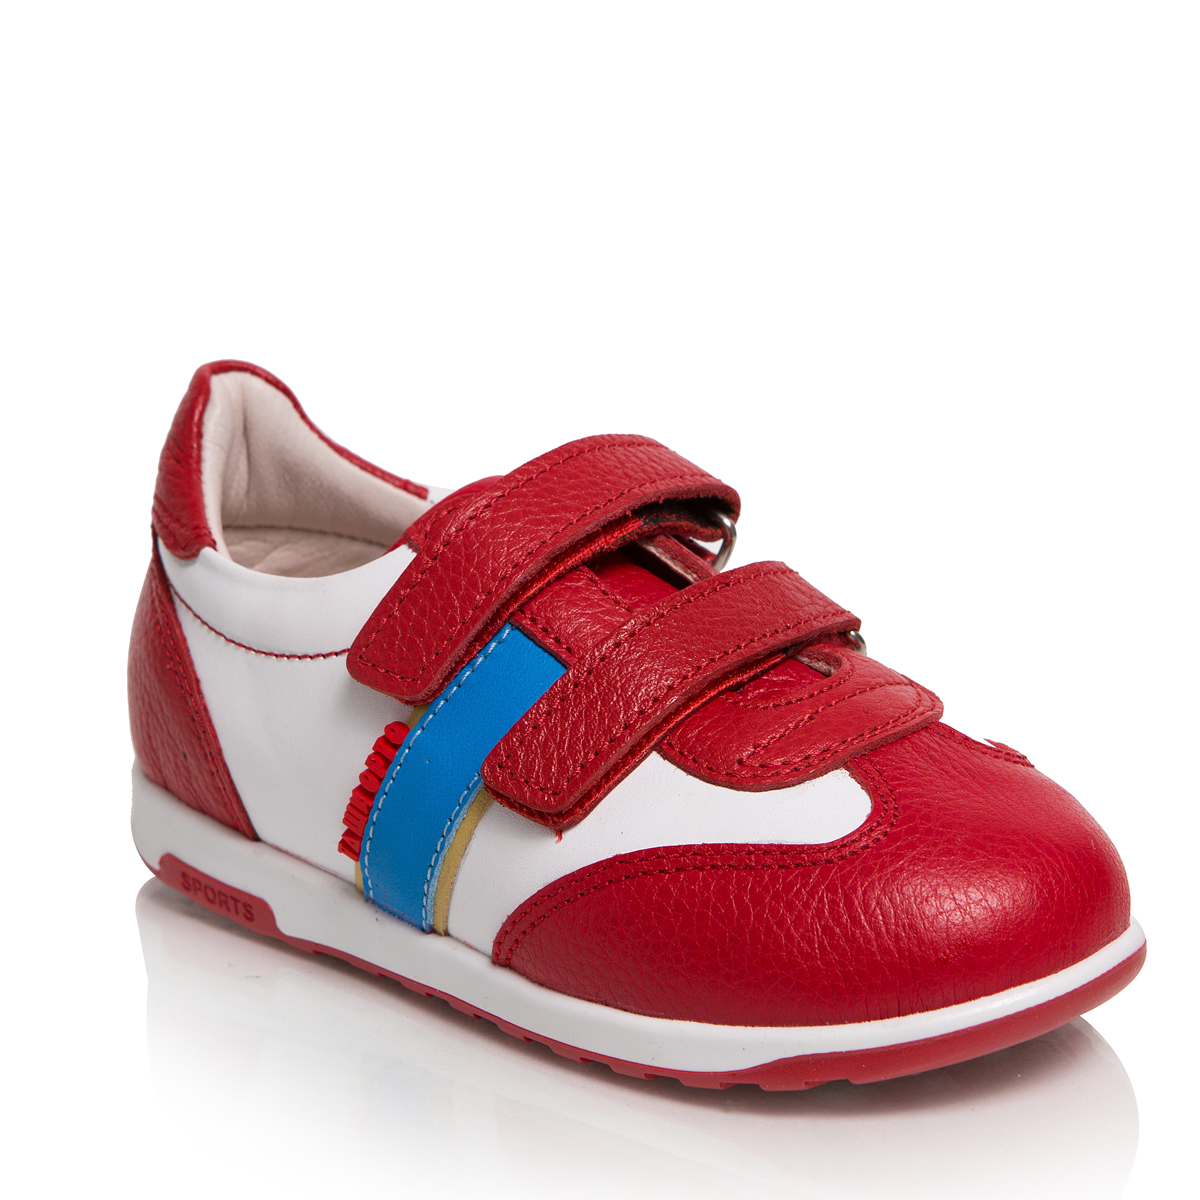 Кроссовки для девочки Таши Орто, цвет: красный, белый. 271-08. Размер 24